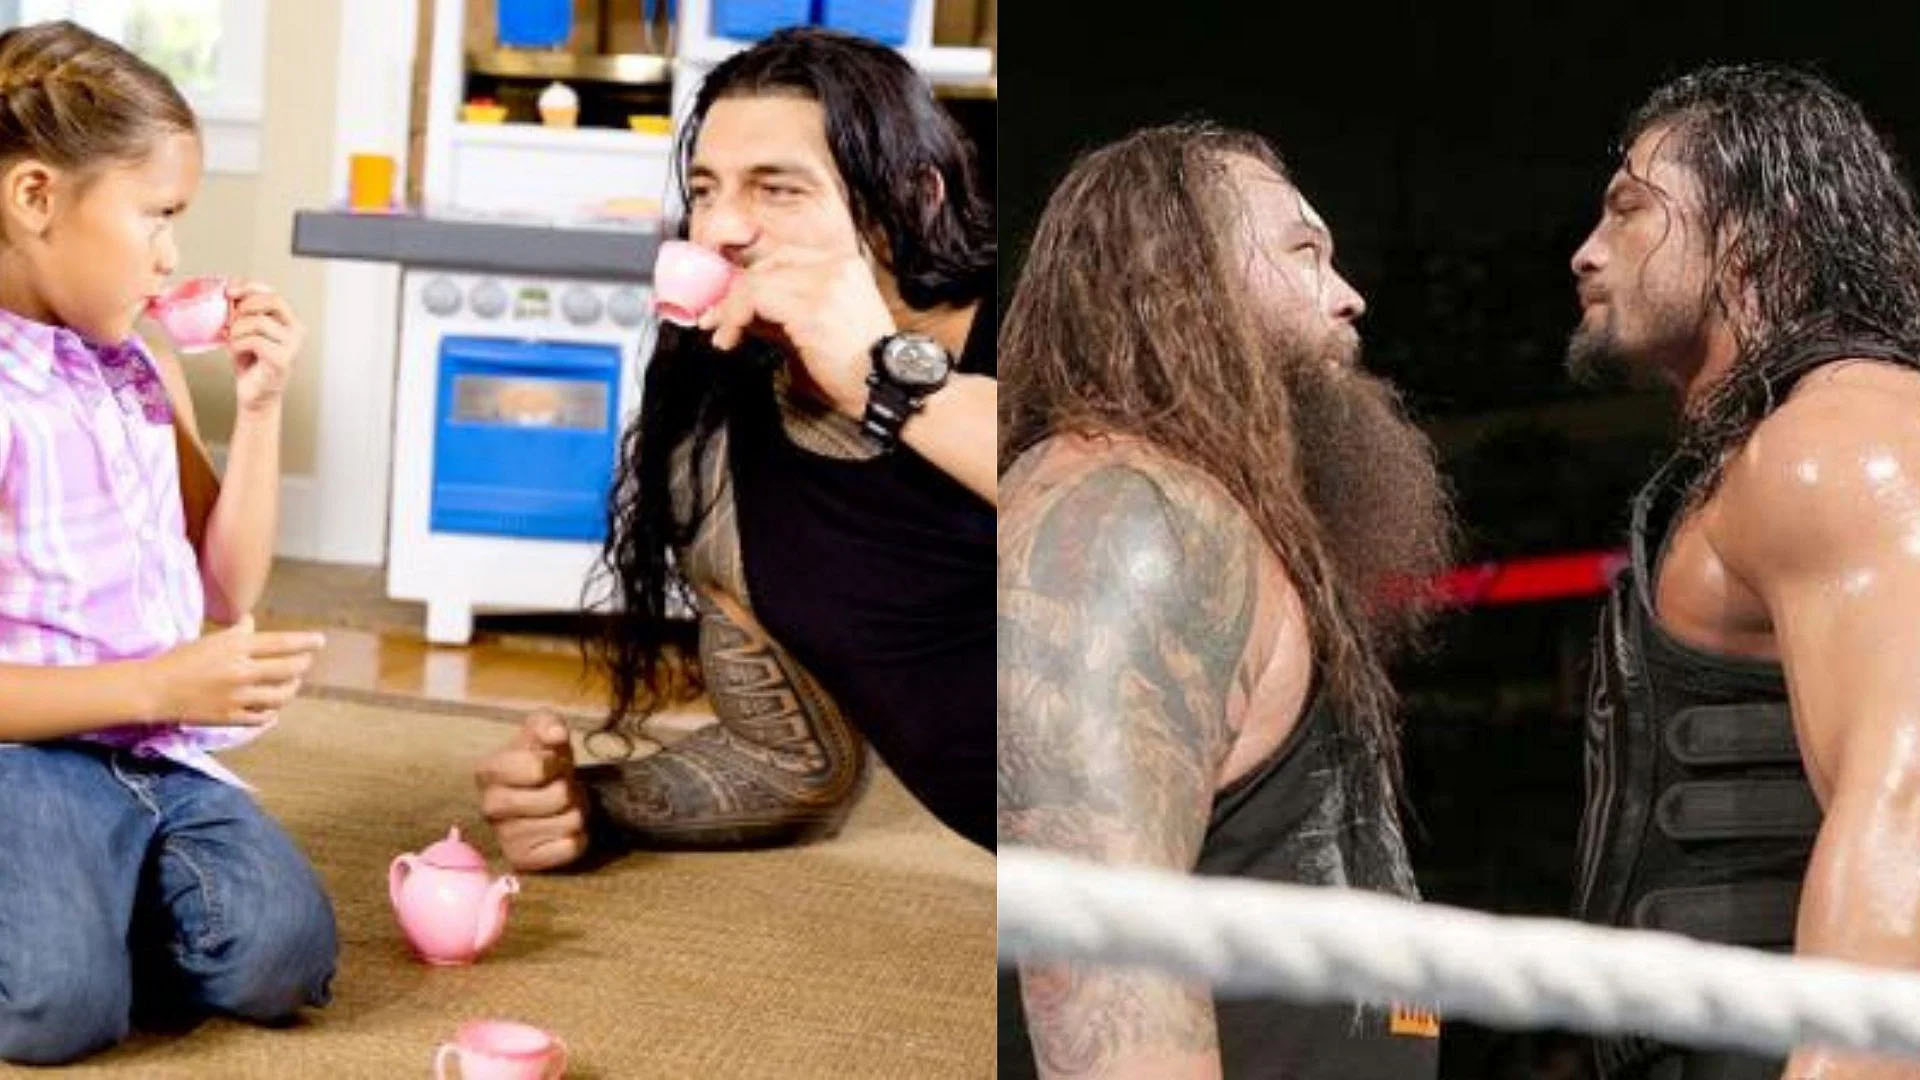 Joelle, Roman Reigns & Bray Wyatt